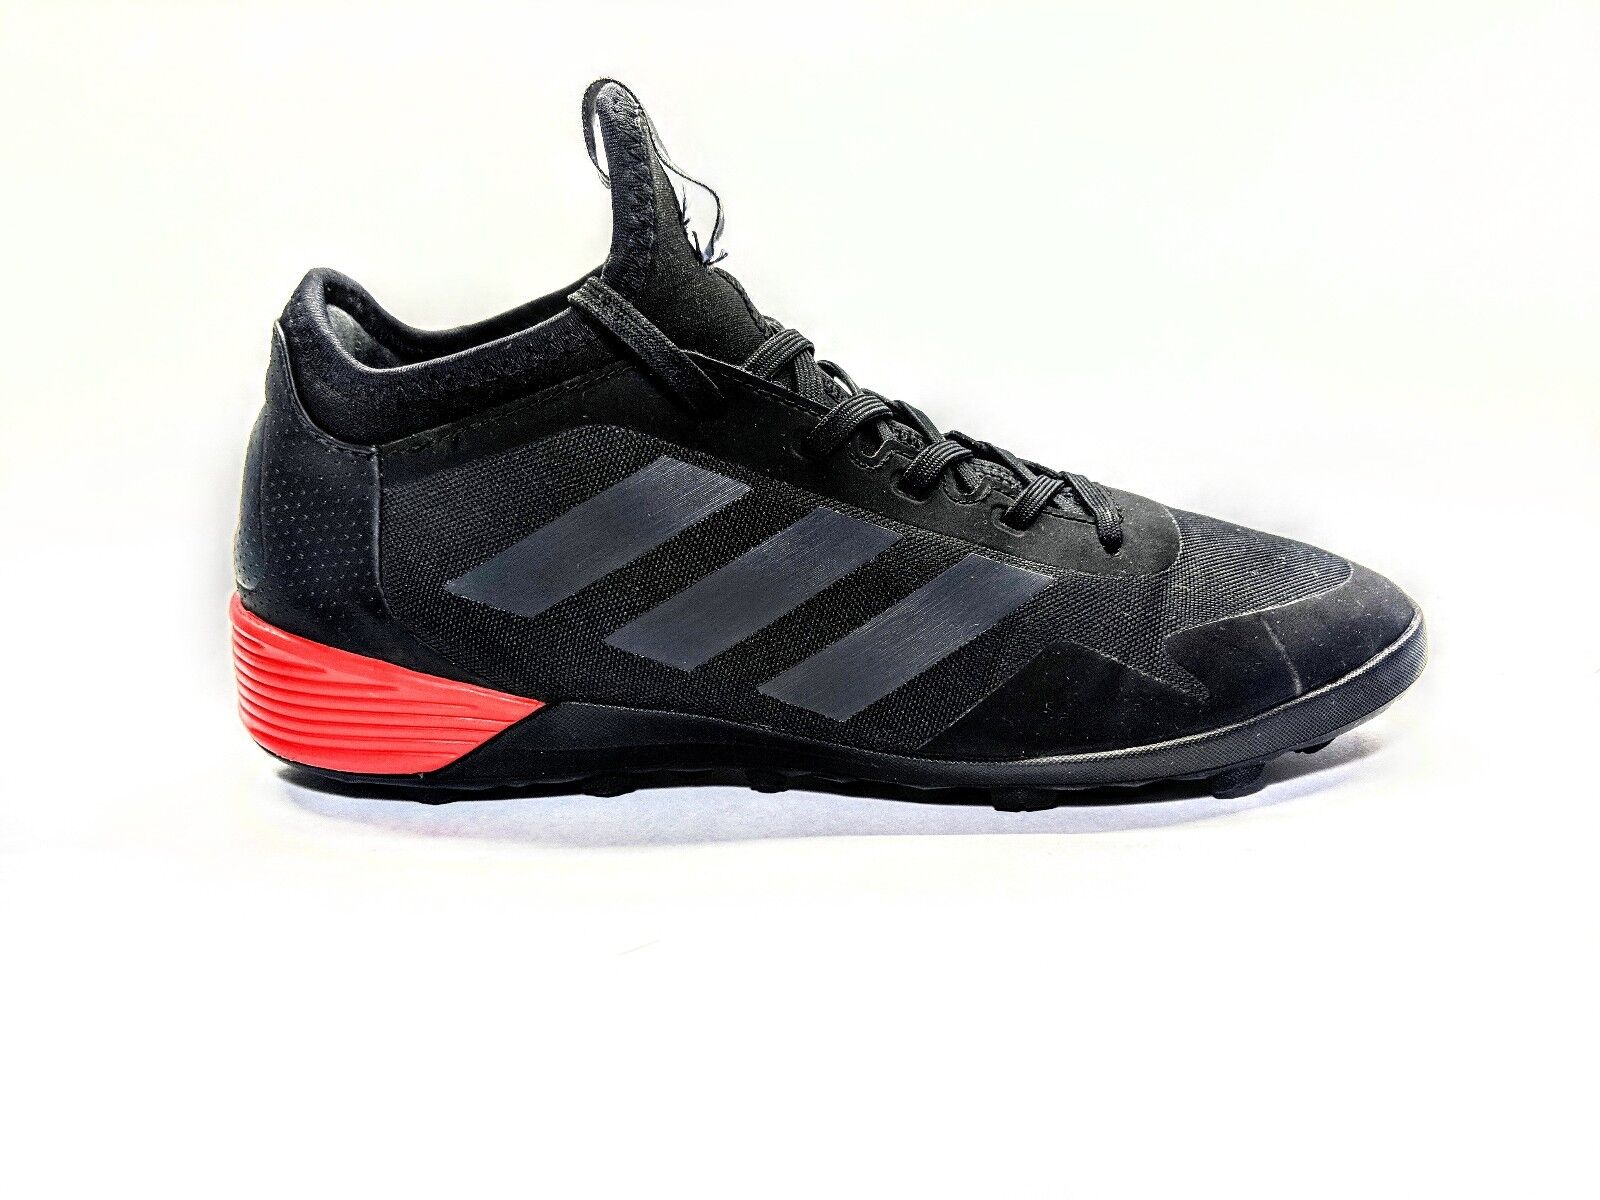 Verwijdering medeleerling beweeglijkheid Adidas Ace Tango 17.2 TF Turf Indoor Soccer Black Red Sz 6.5 BA8539 | eBay